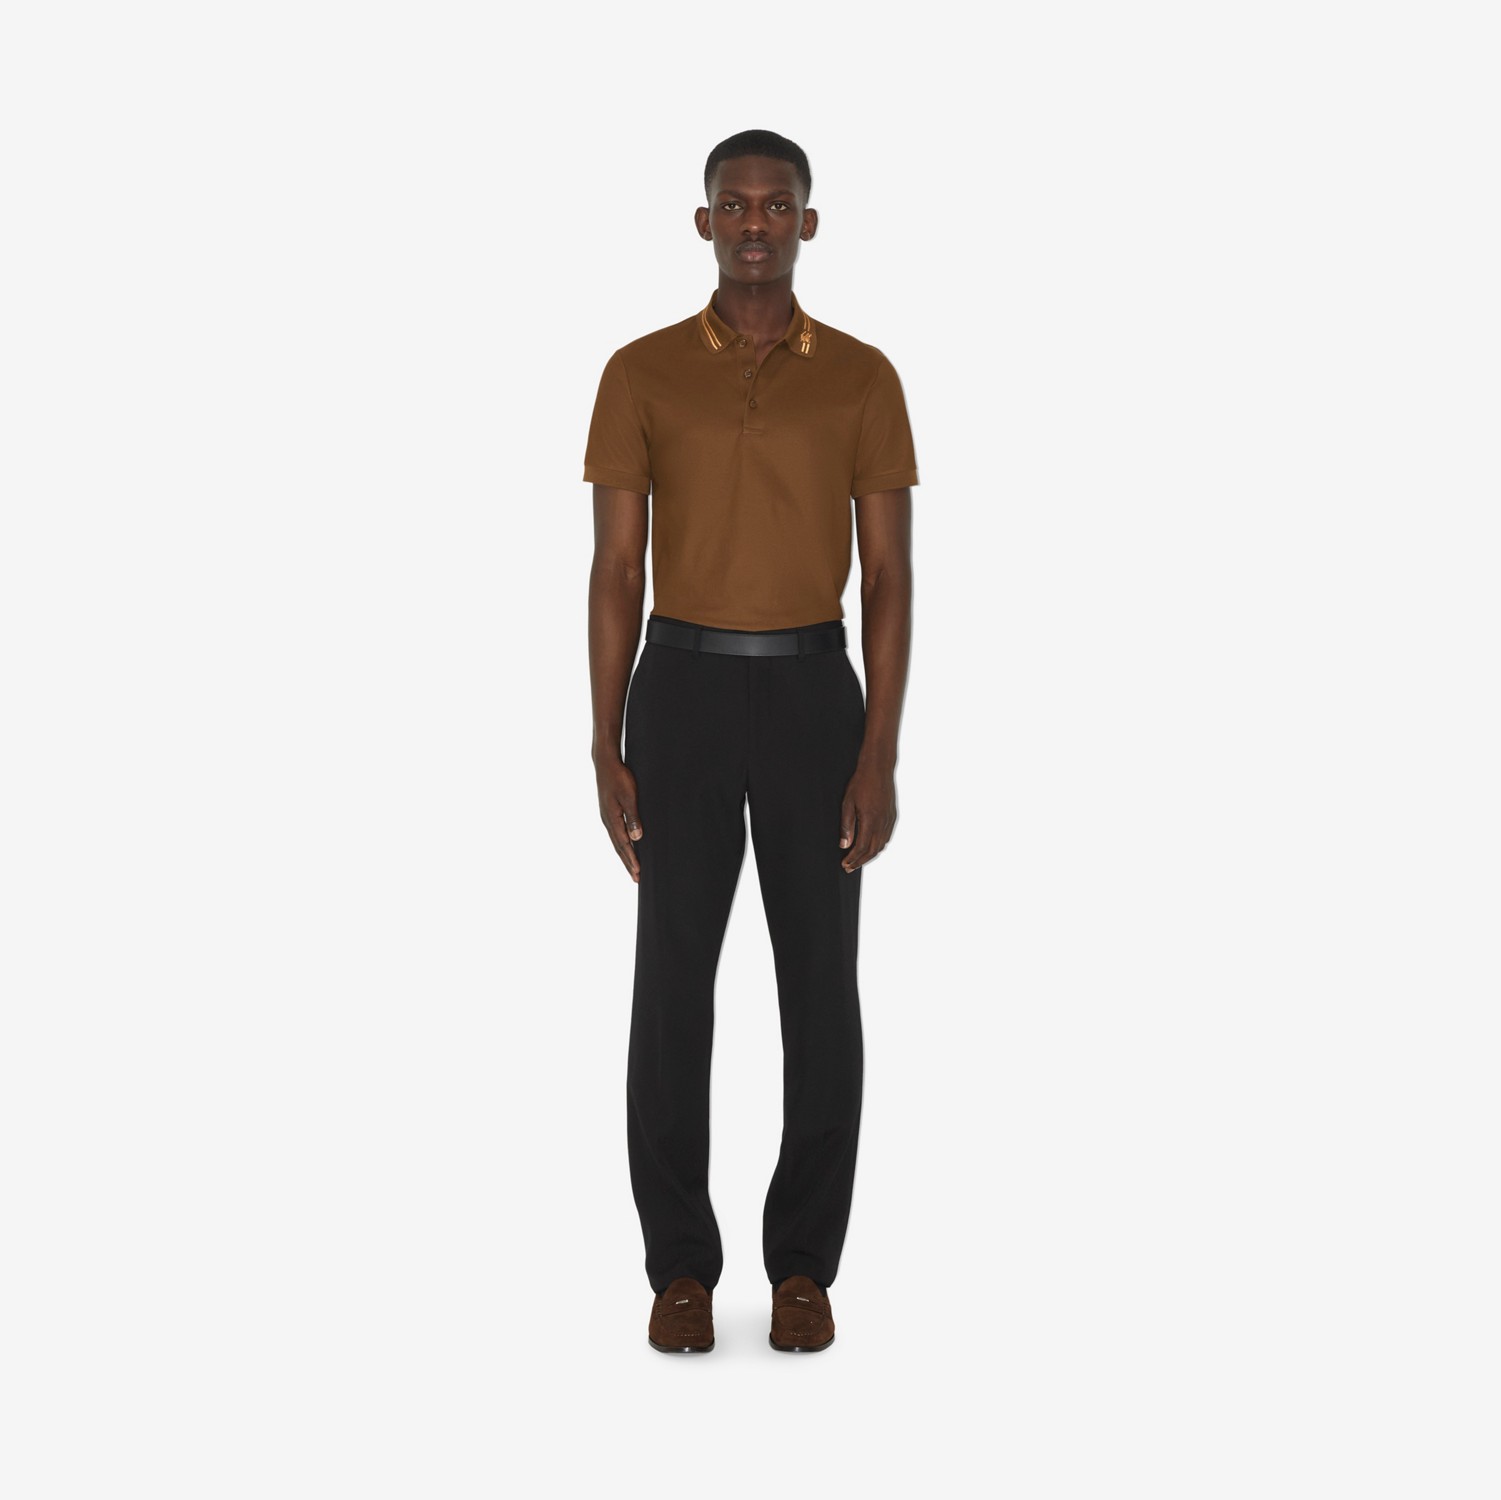 モノグラムモチーフ コットン ポロシャツ (ダークバーチブラウン) - メンズ | Burberry®公式サイト